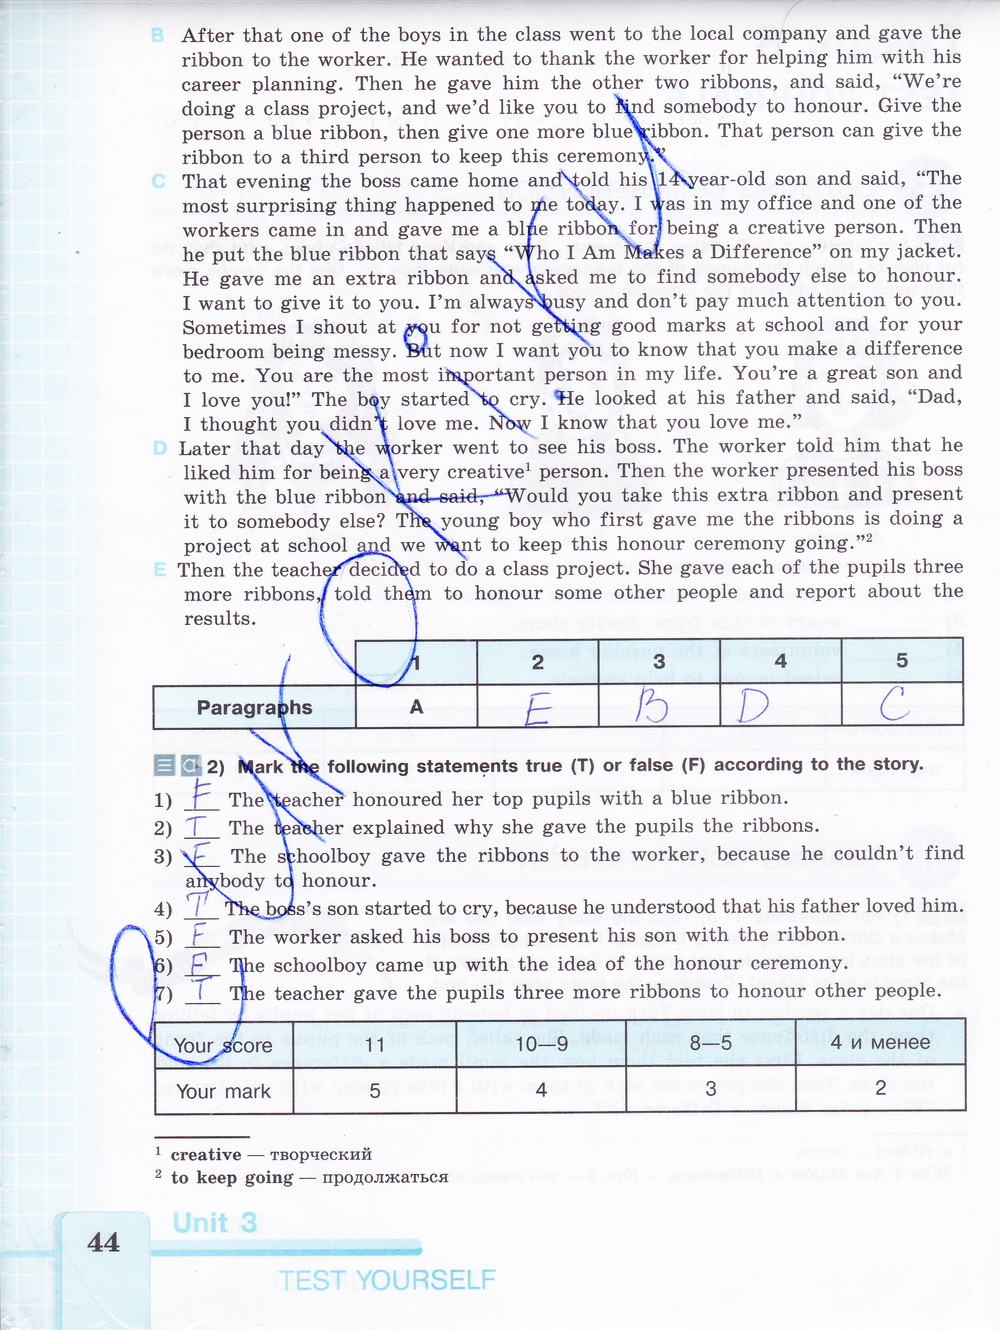 Рабочая тетрадь по английскому 7 класс (нумерация страниц не совпадает на 2 стр. со старым изданием) Кузовлев Страница 44